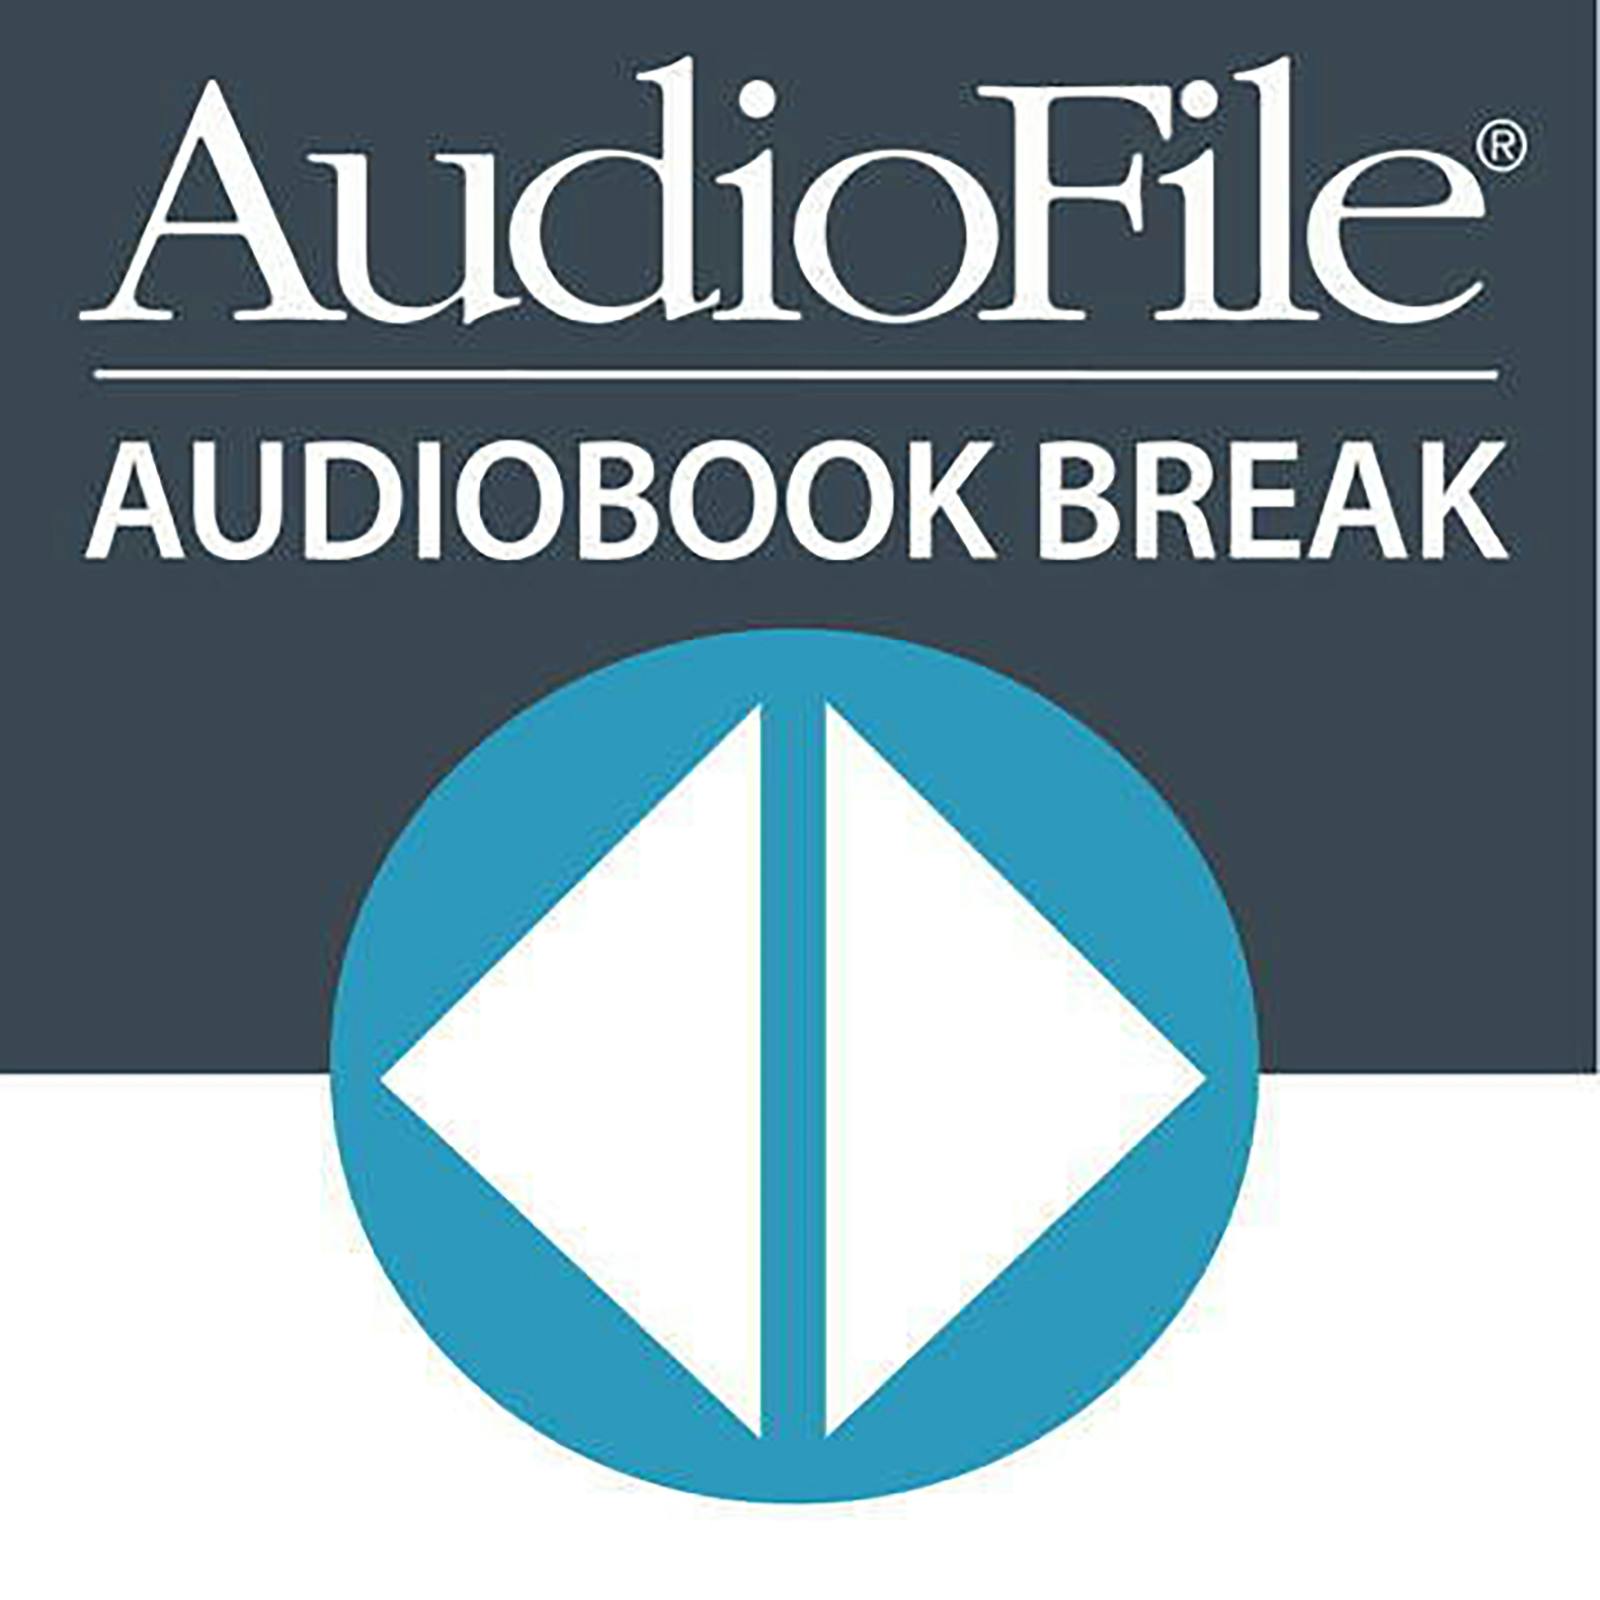 Audiobook Break Announcement